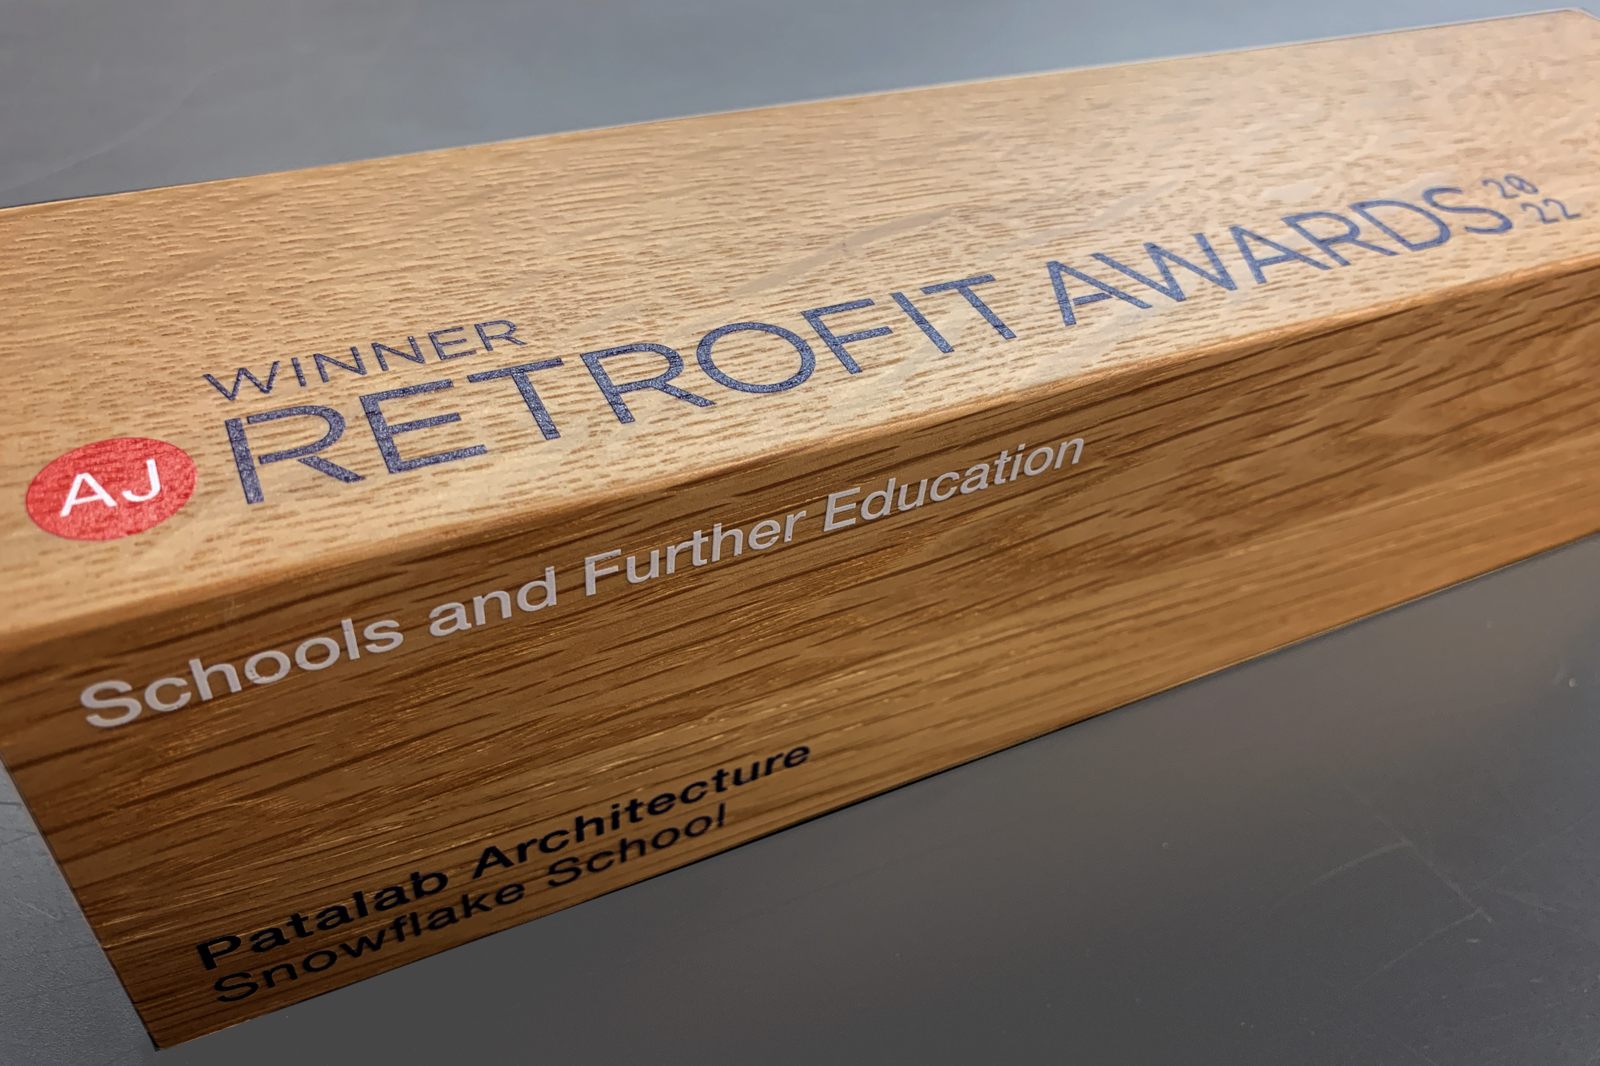 AJ Retrofit Awards Winner: Trophy